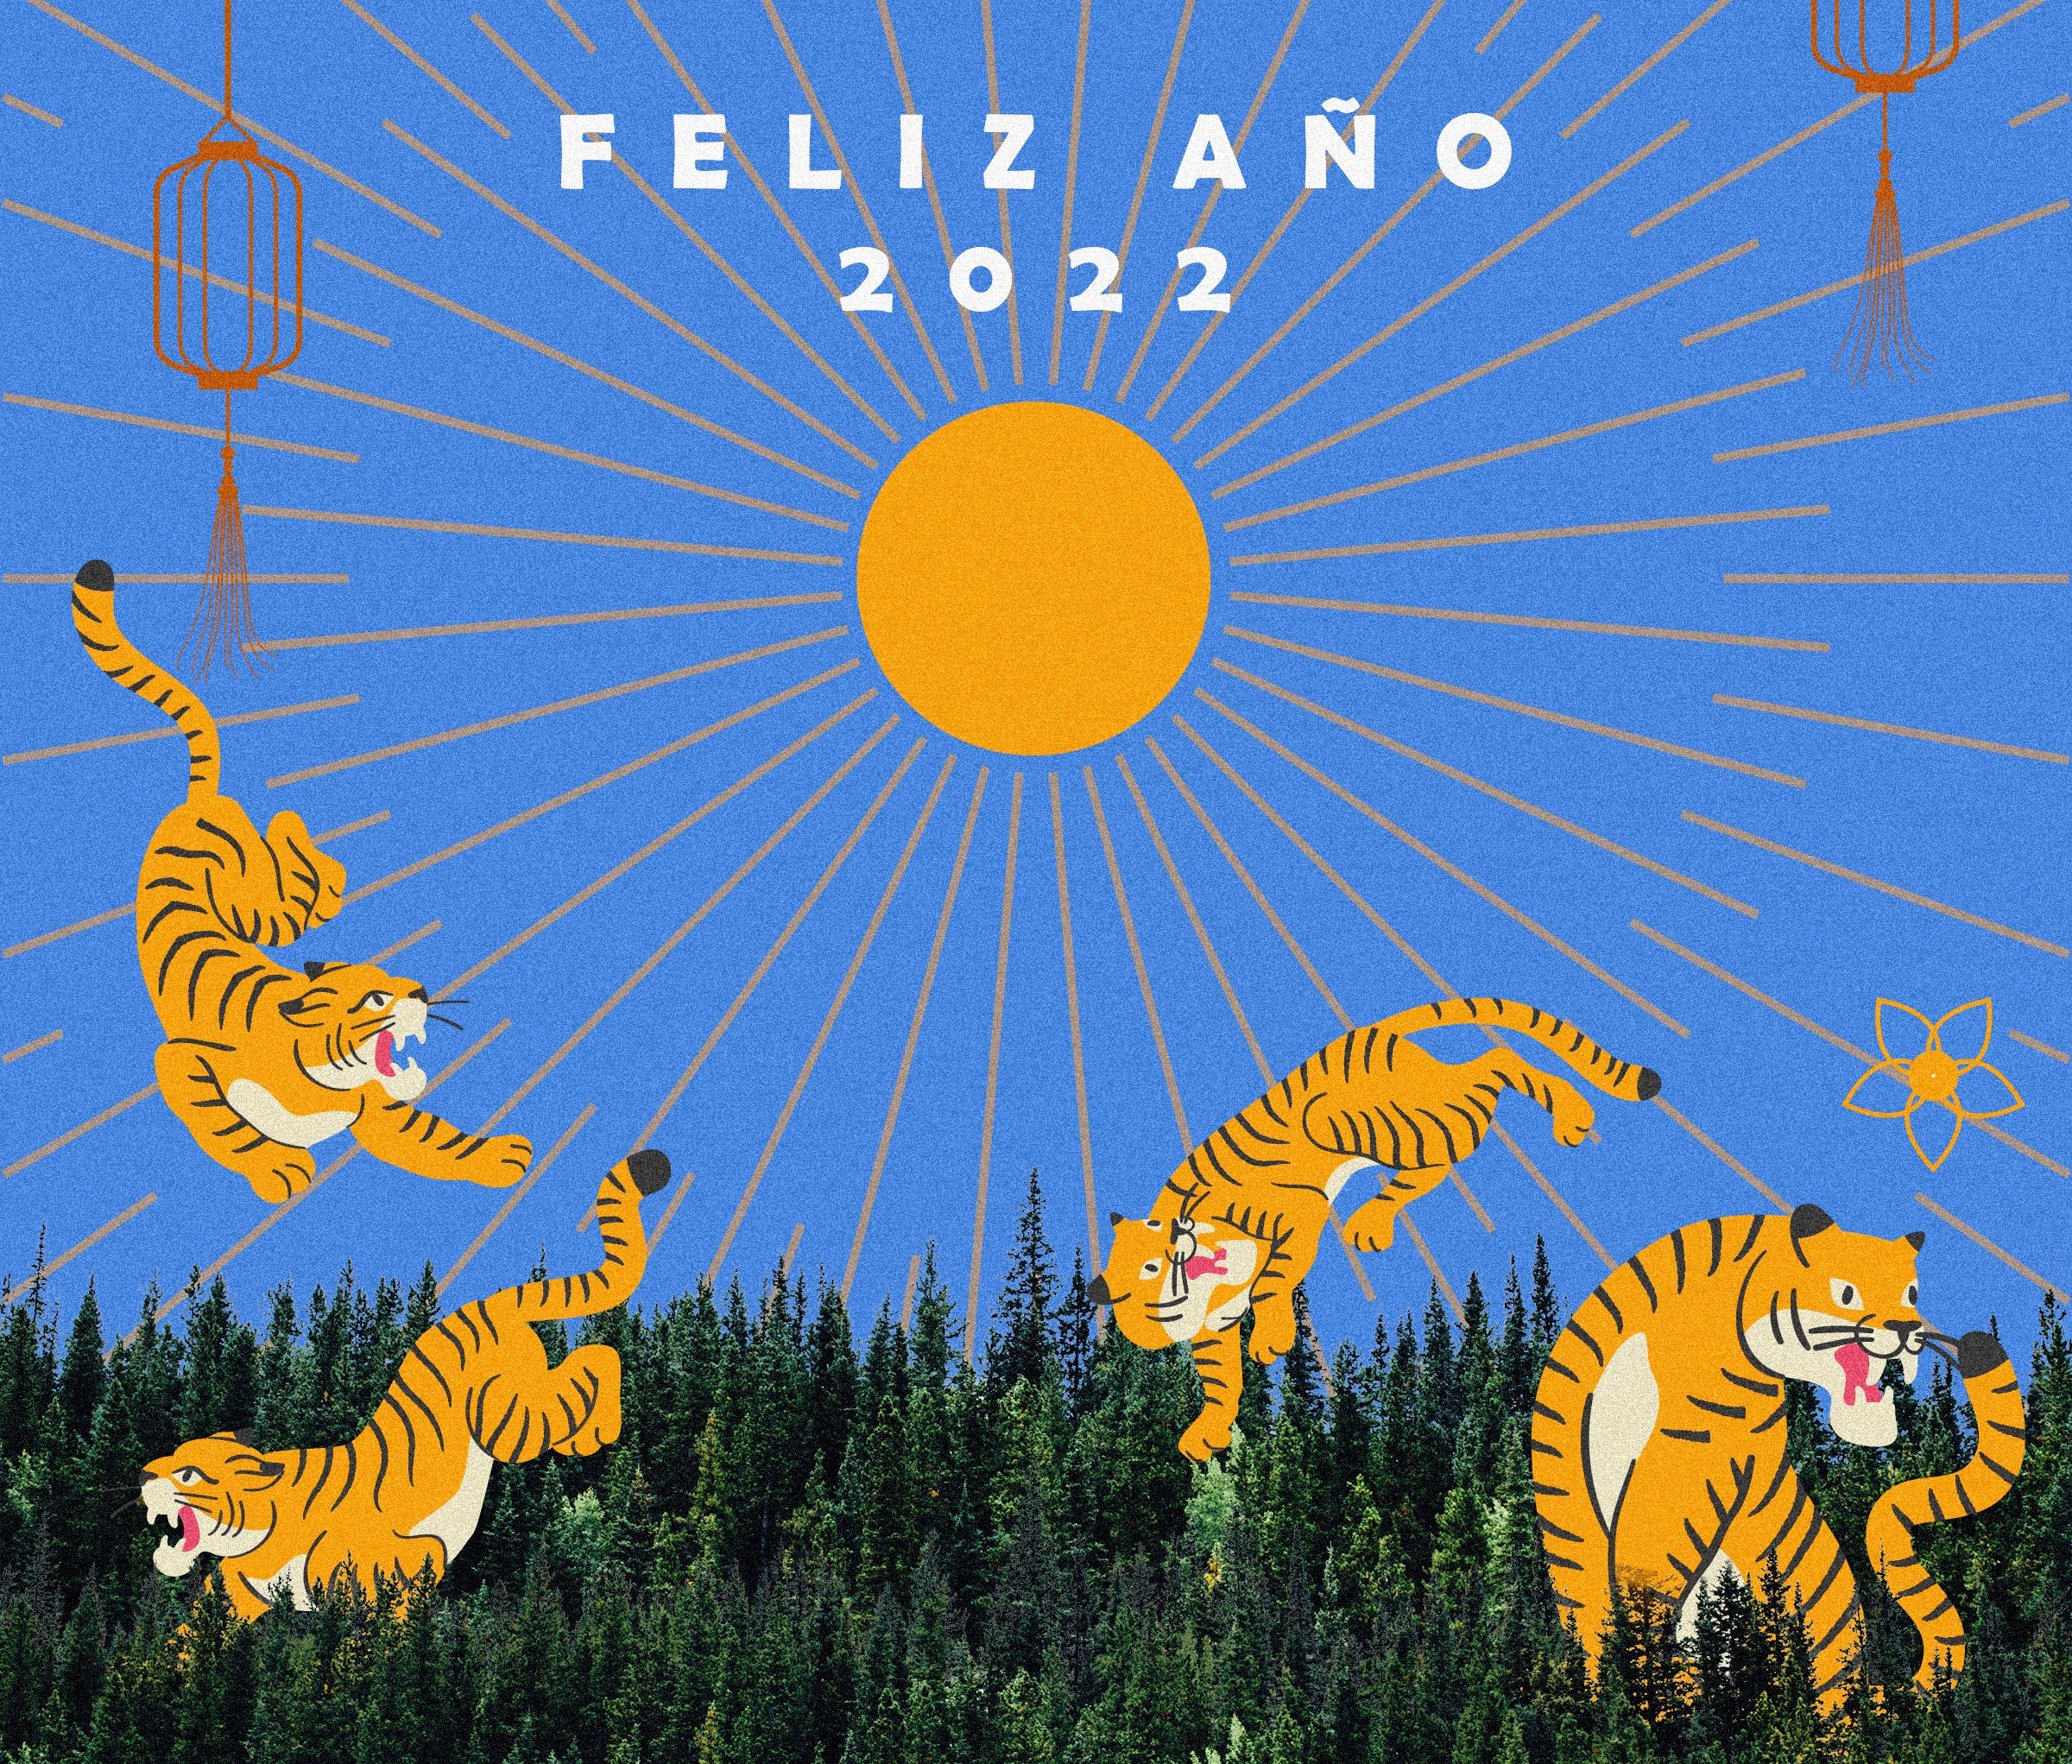 El horóscopo de Pedro Engel: ¡Feliz Año Nuevo Chino 2022!